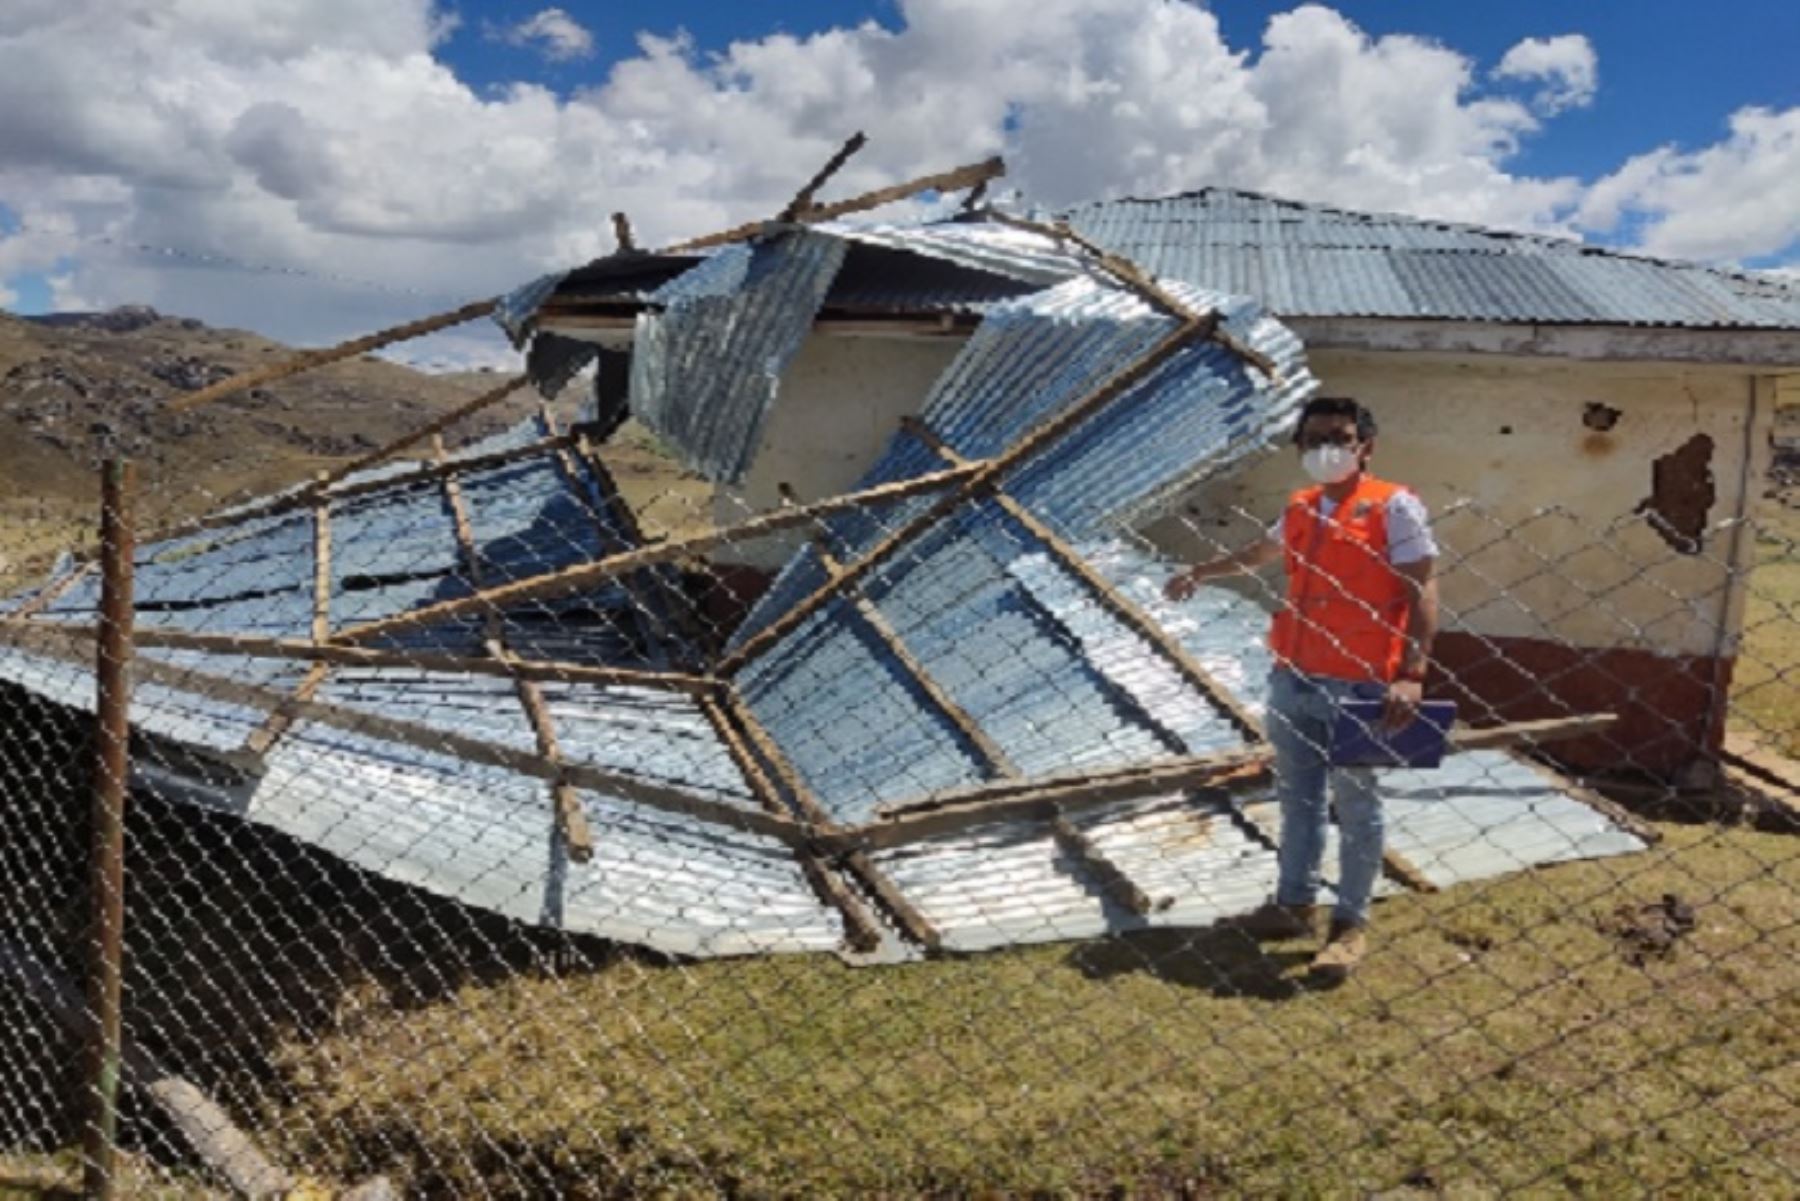 Vientos fuertes arrancaron el techo de viviendas rústicas del centro poblado de Pocobamba, región Pasco.